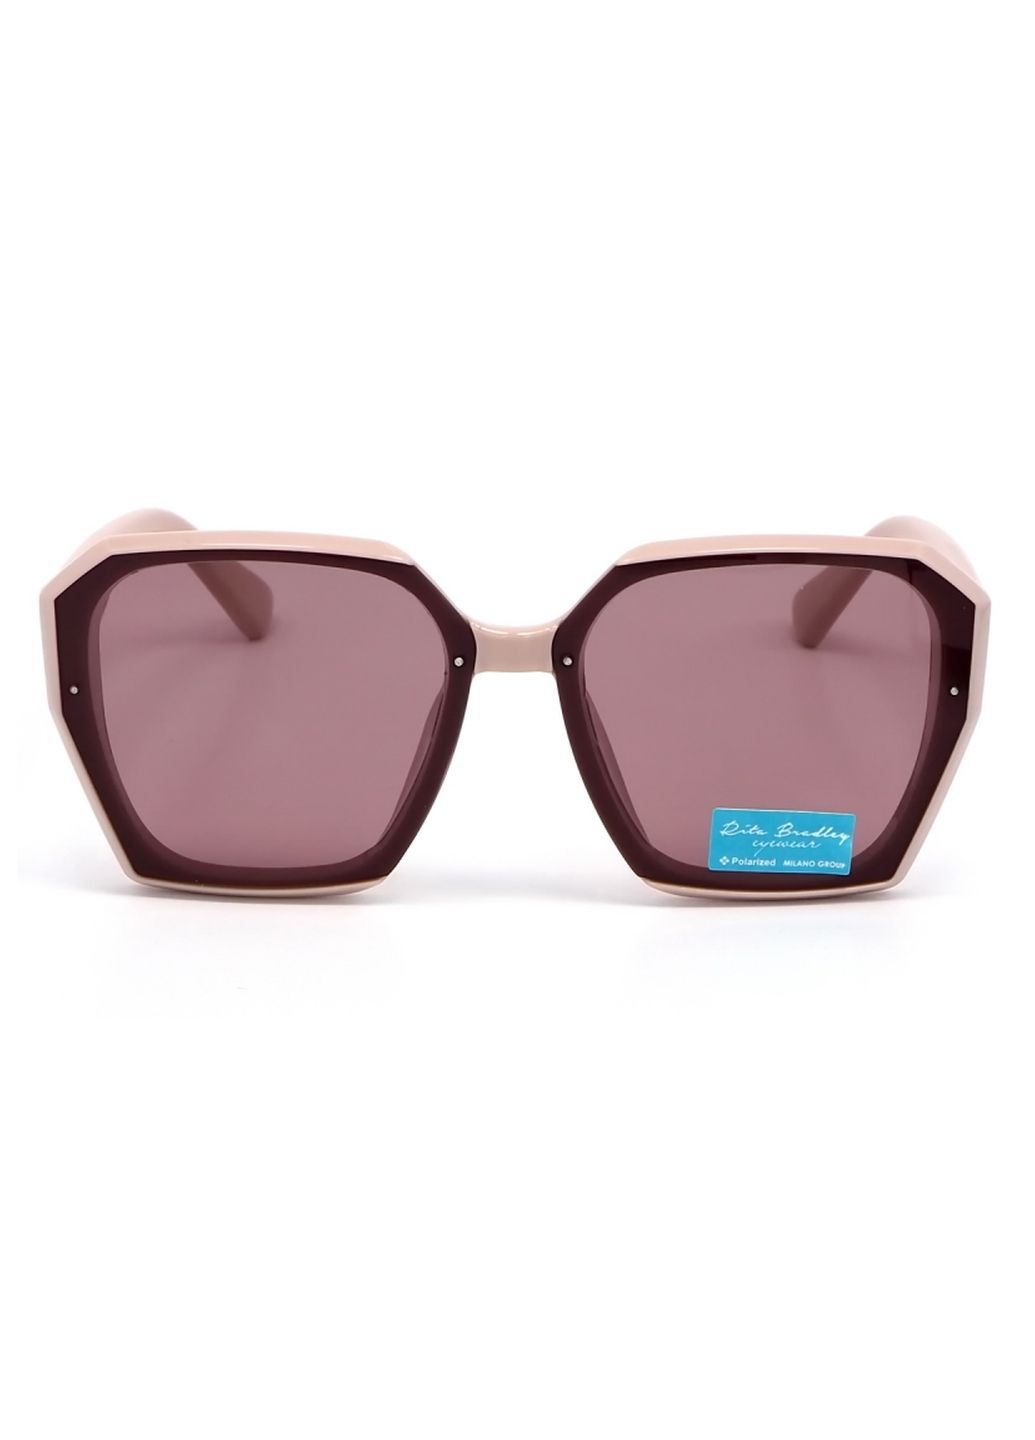 Купить Женские солнцезащитные очки Rita Bradley с поляризацией RB721 112030 в интернет-магазине